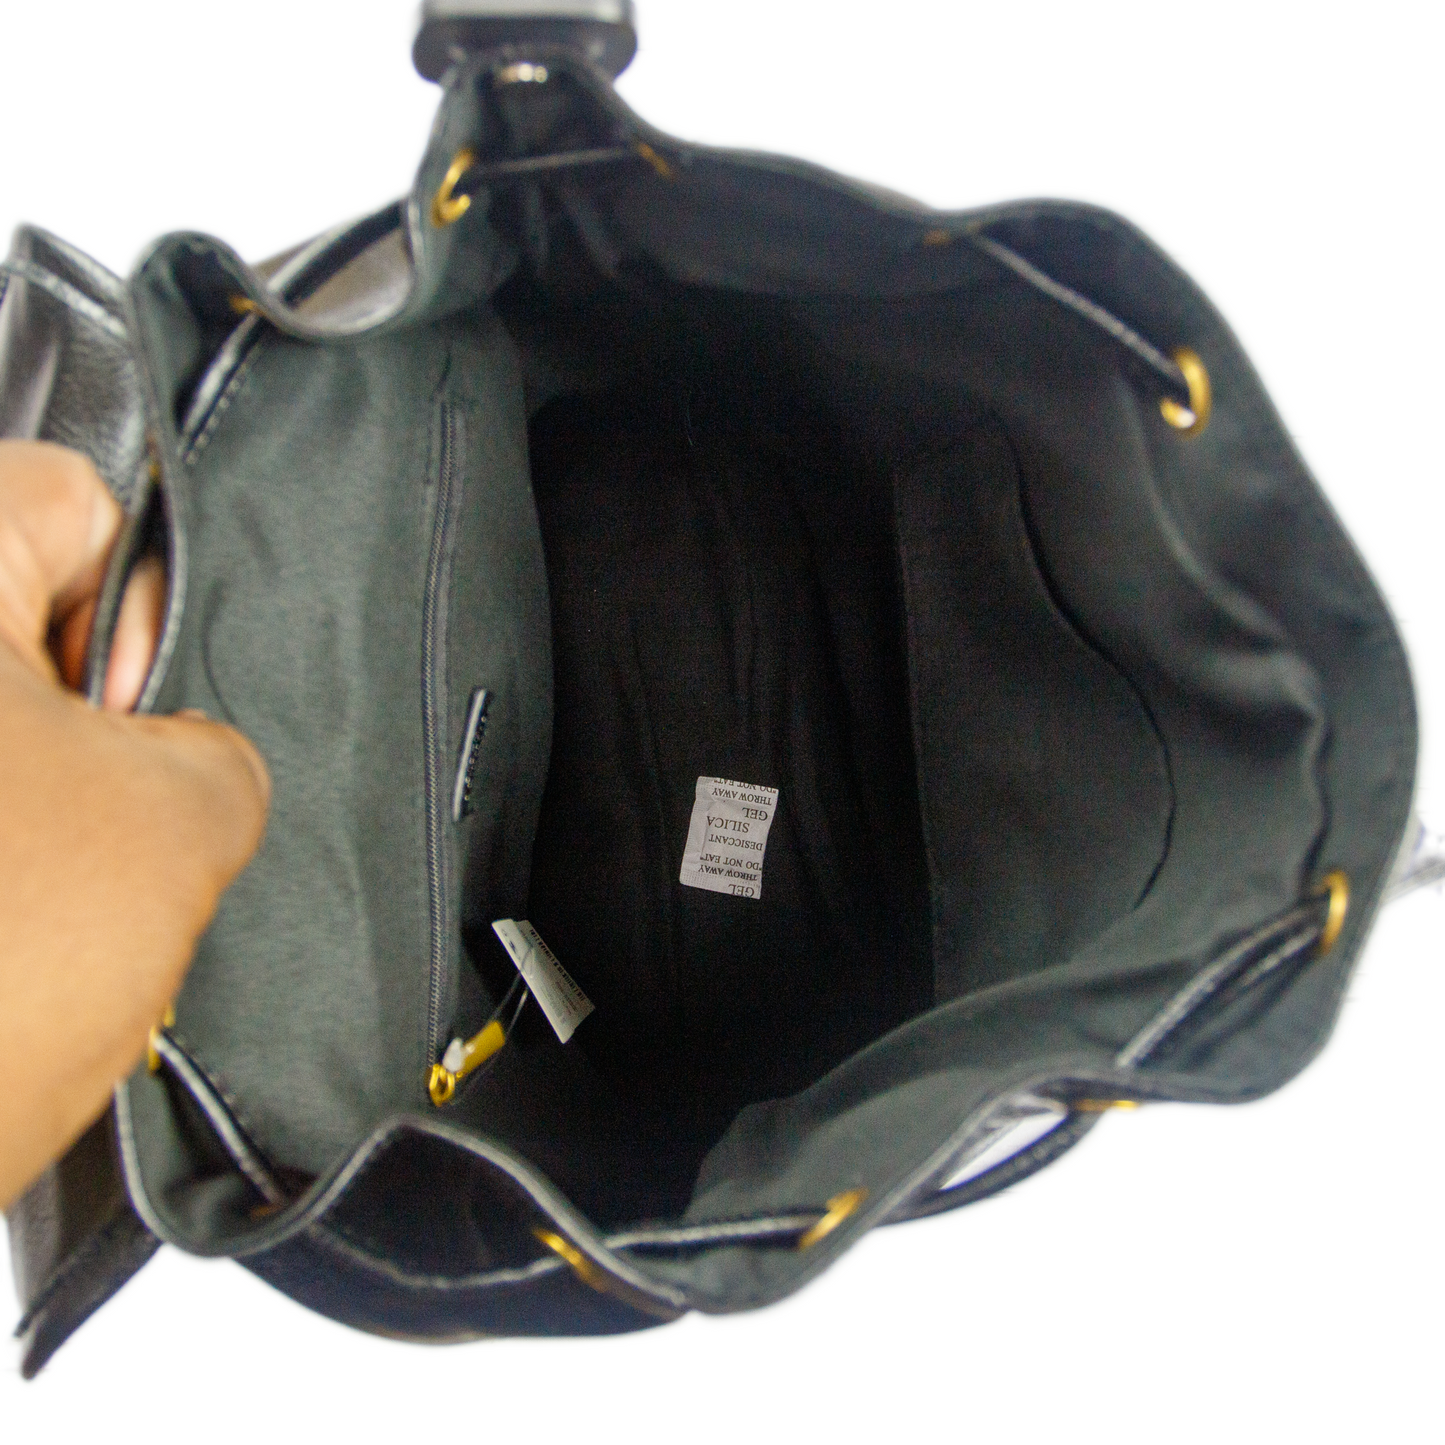 Backpack By Cuir Vegan Size: Medium